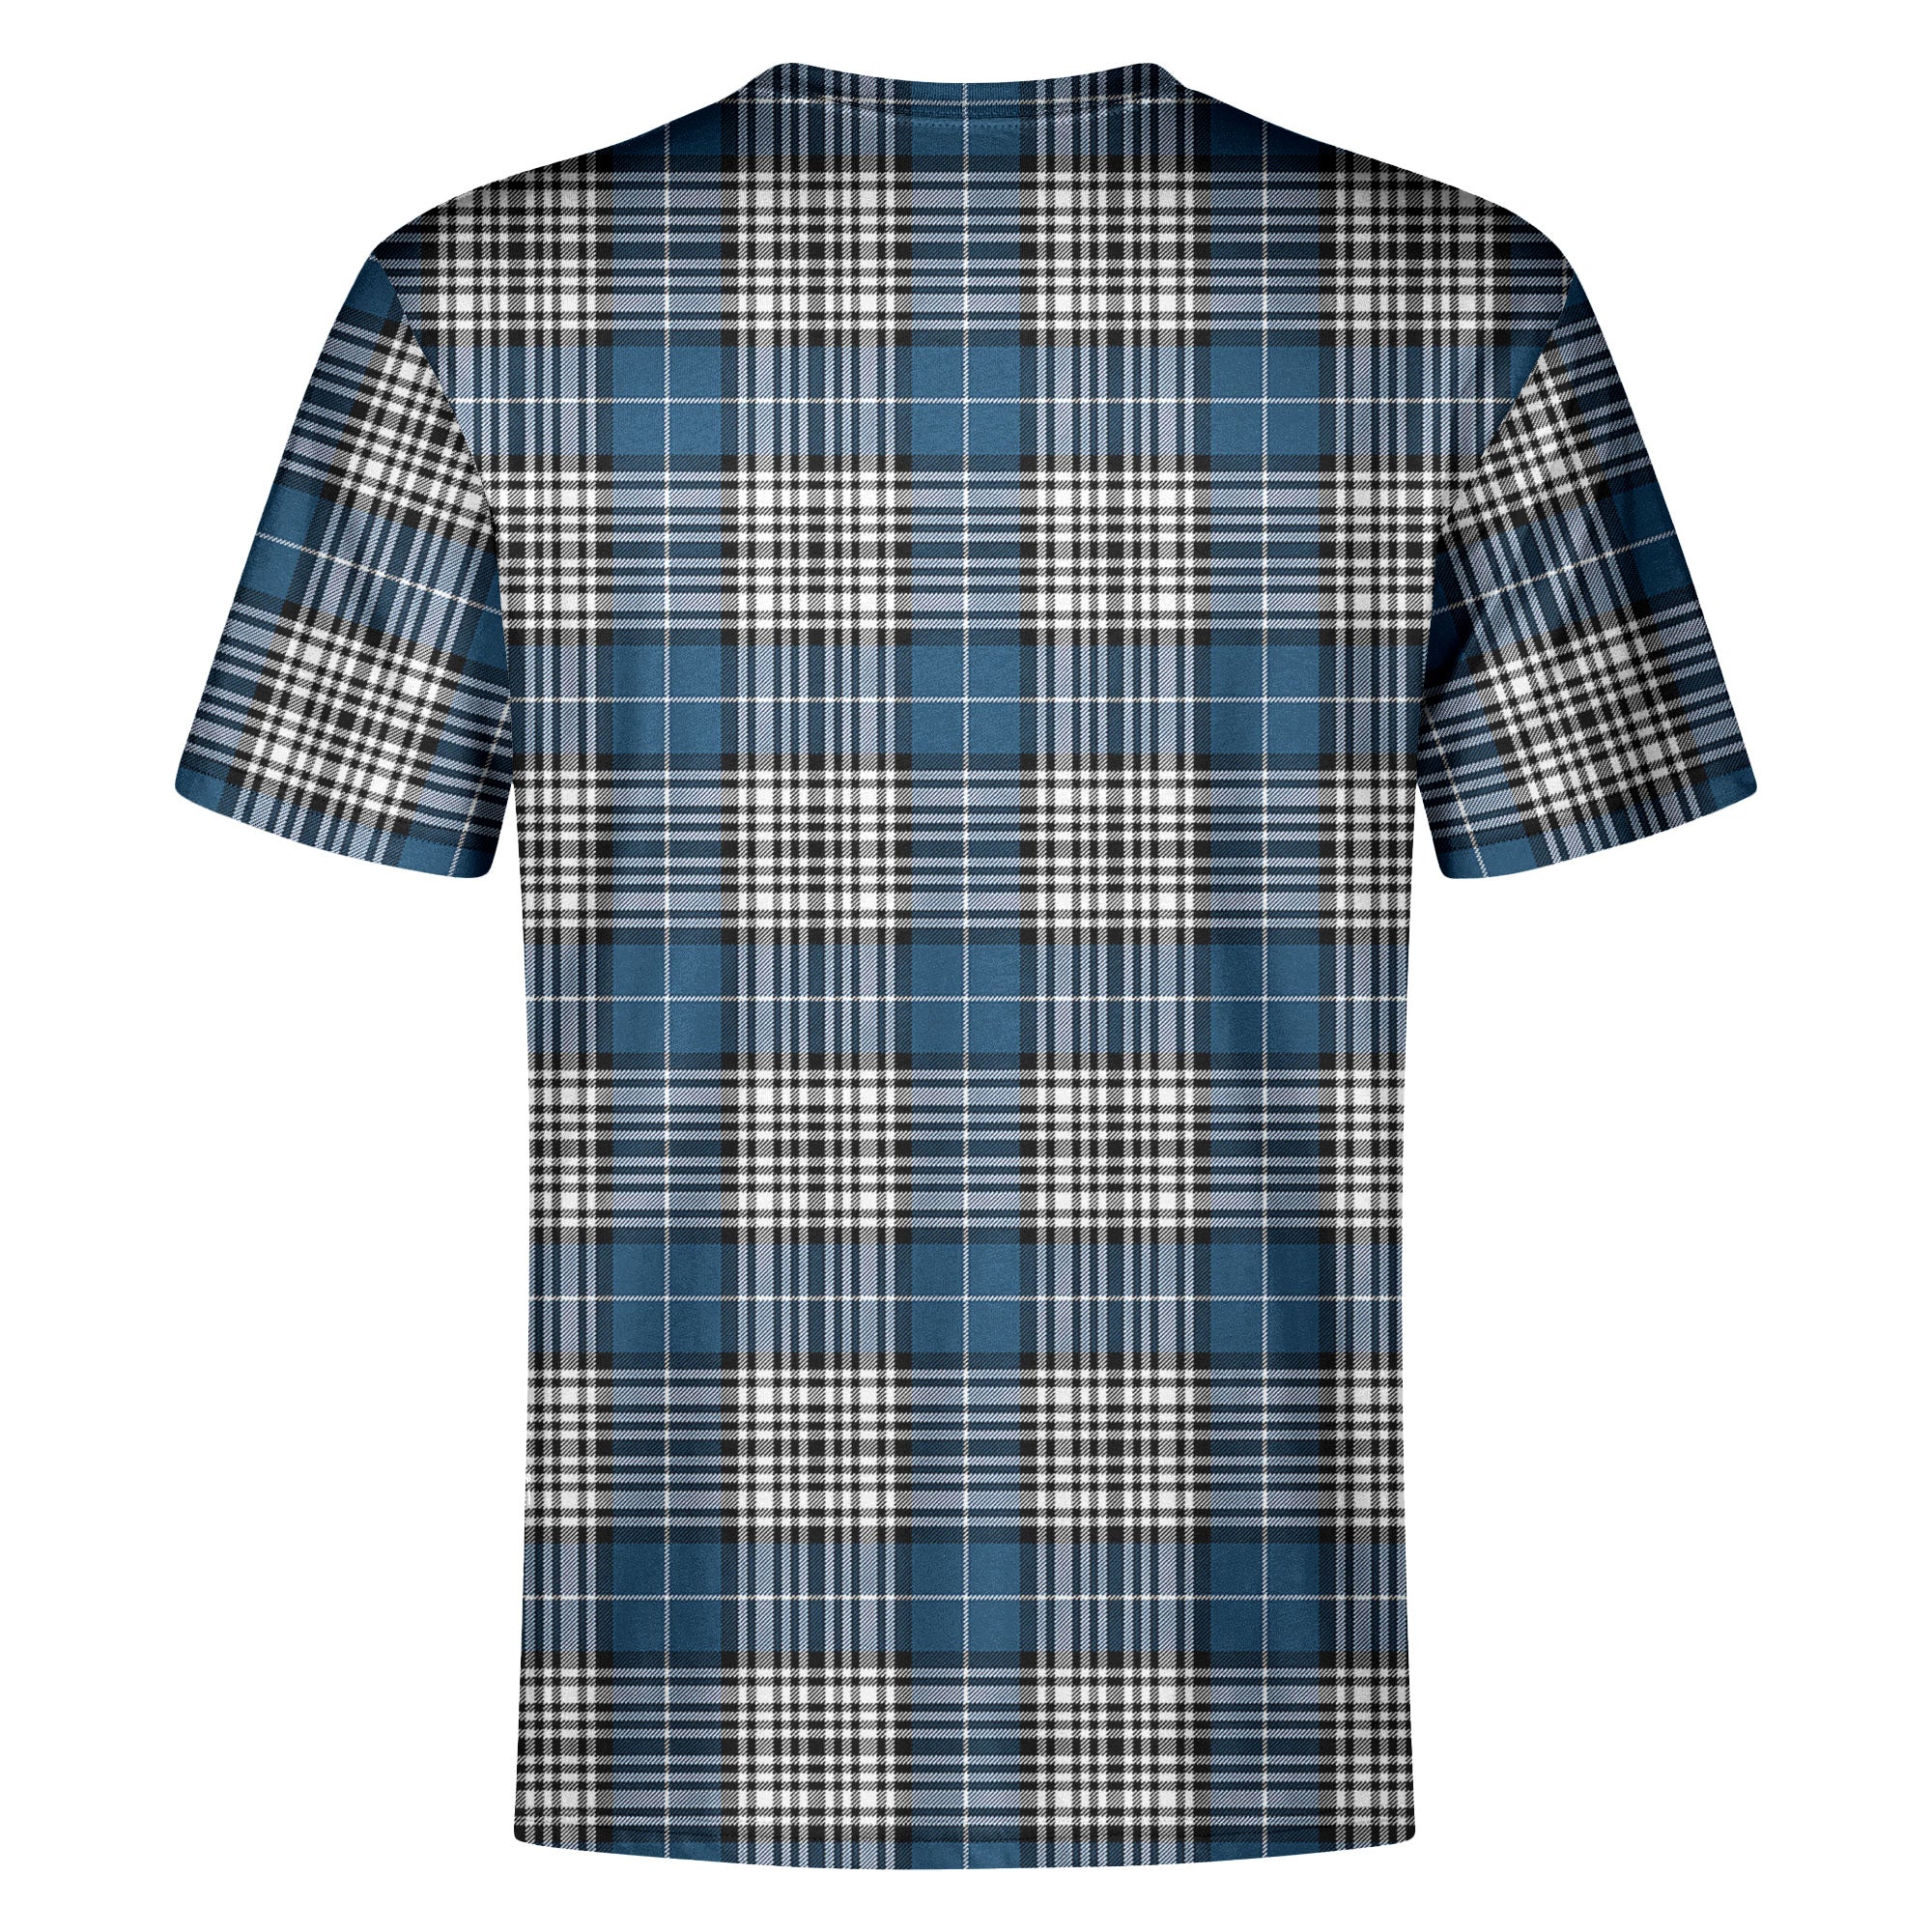 Napier Modern Tartan Crest T-shirt